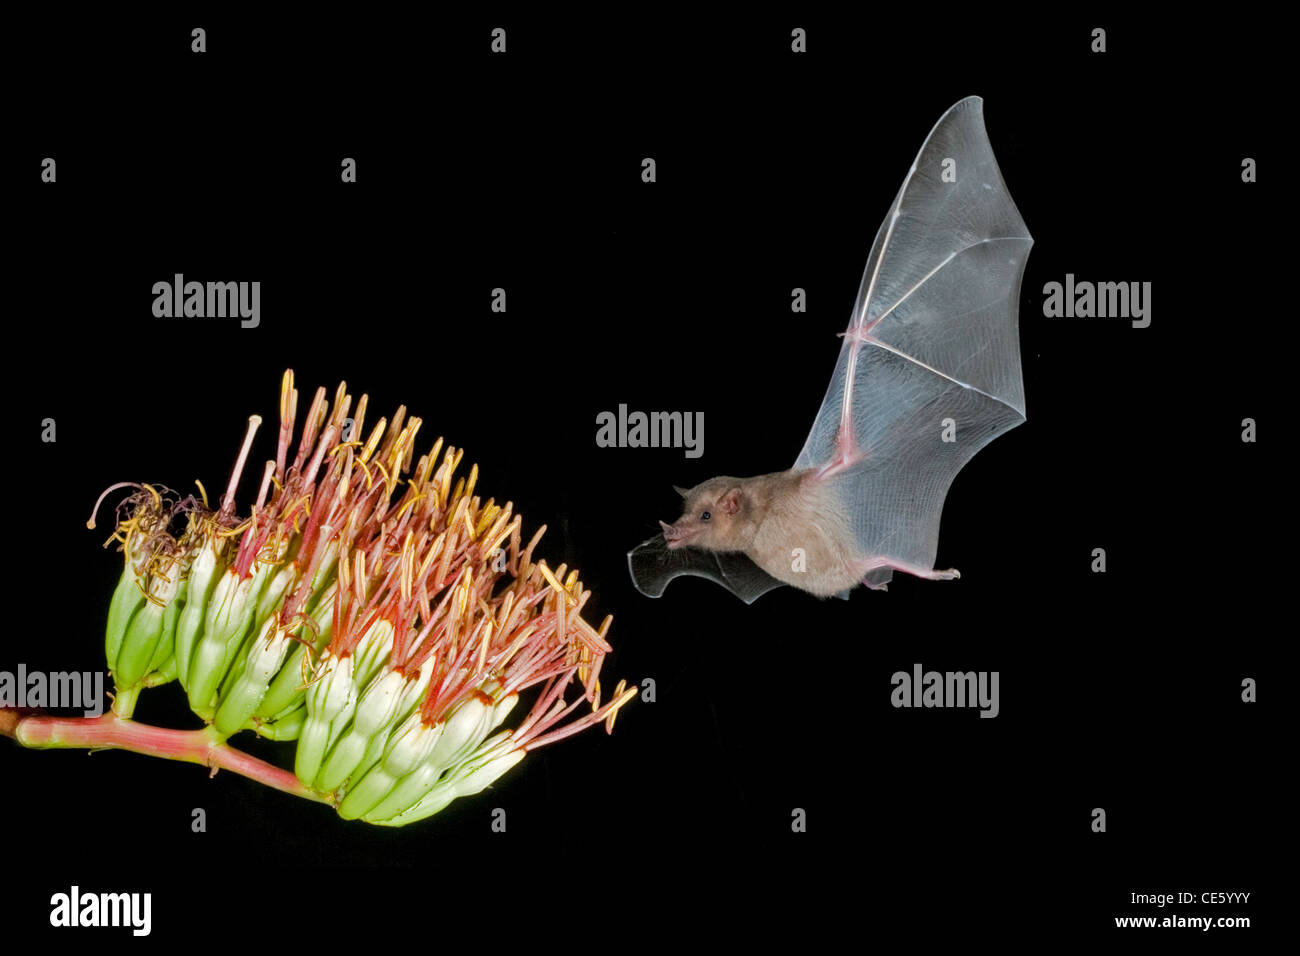 Proboscis Long mexicaine Bat Choeronycteris mexicana Amado, Arizona, United States 19 août adulte à Parry's fleurs d'Agave Banque D'Images